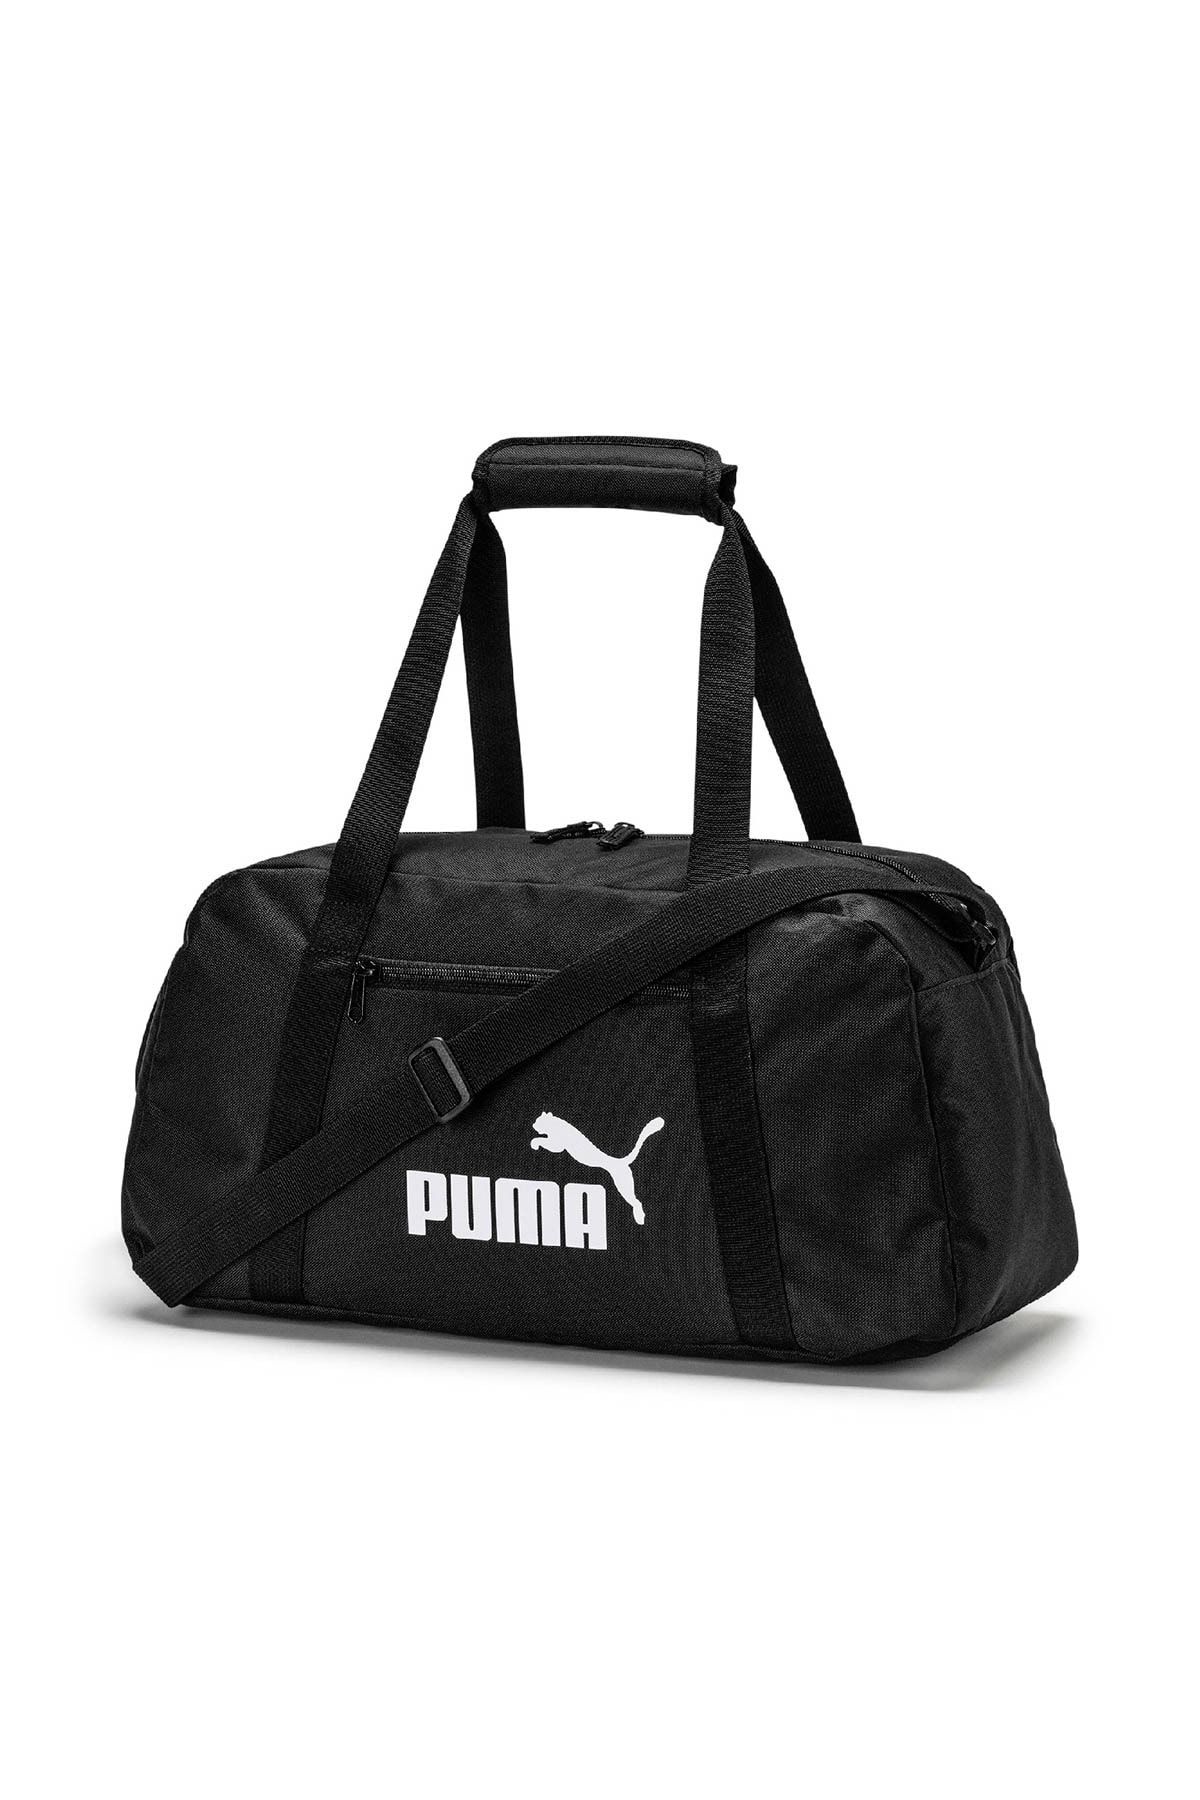 Puma PHASE SPORTS Siyah Unisex Spor Çantası 100409619